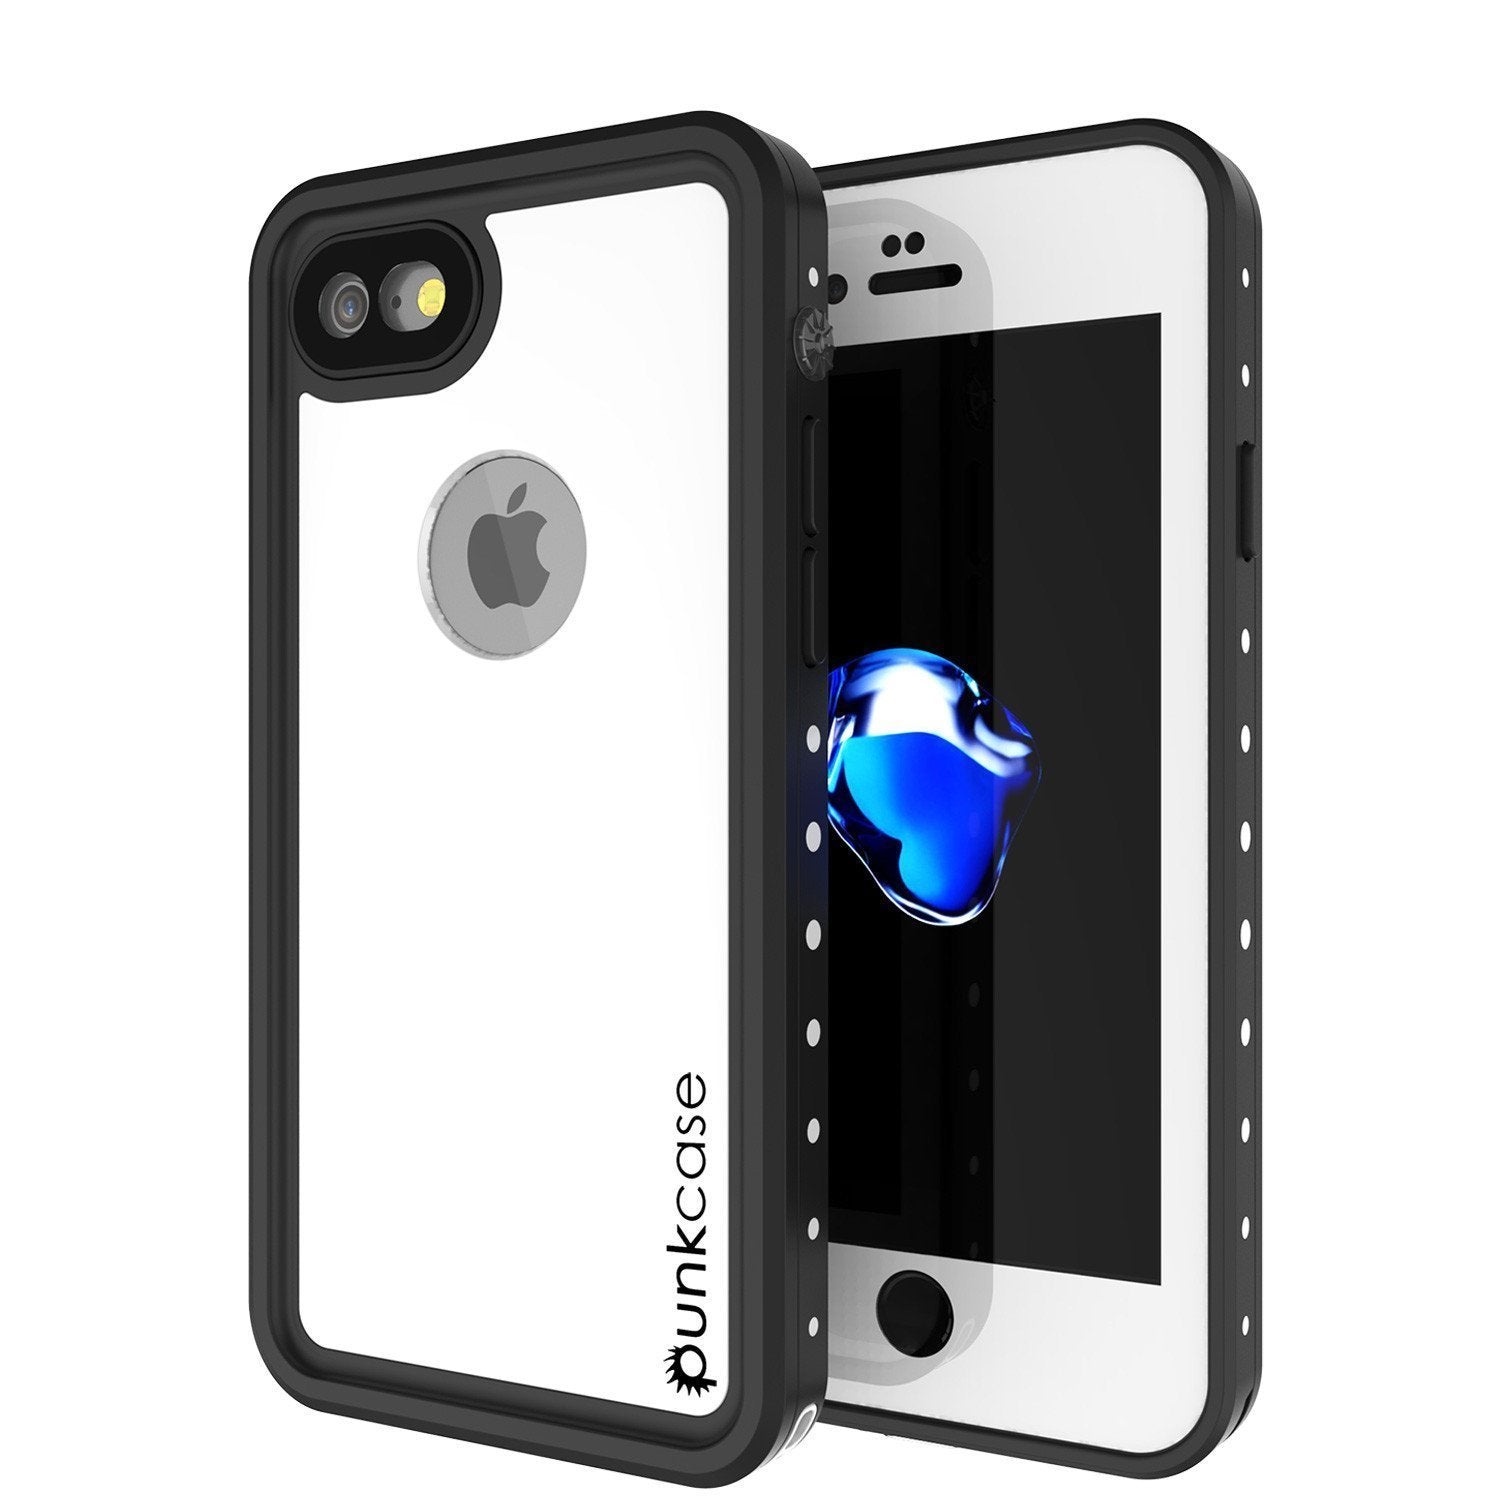 iPhone 8 Waterproof IP68 Case, Punkcase [White] [StudStar Series] [Slim Fit] [IP68 Certified]] [Dirtproof] [Snowproof] (Color in image: white)